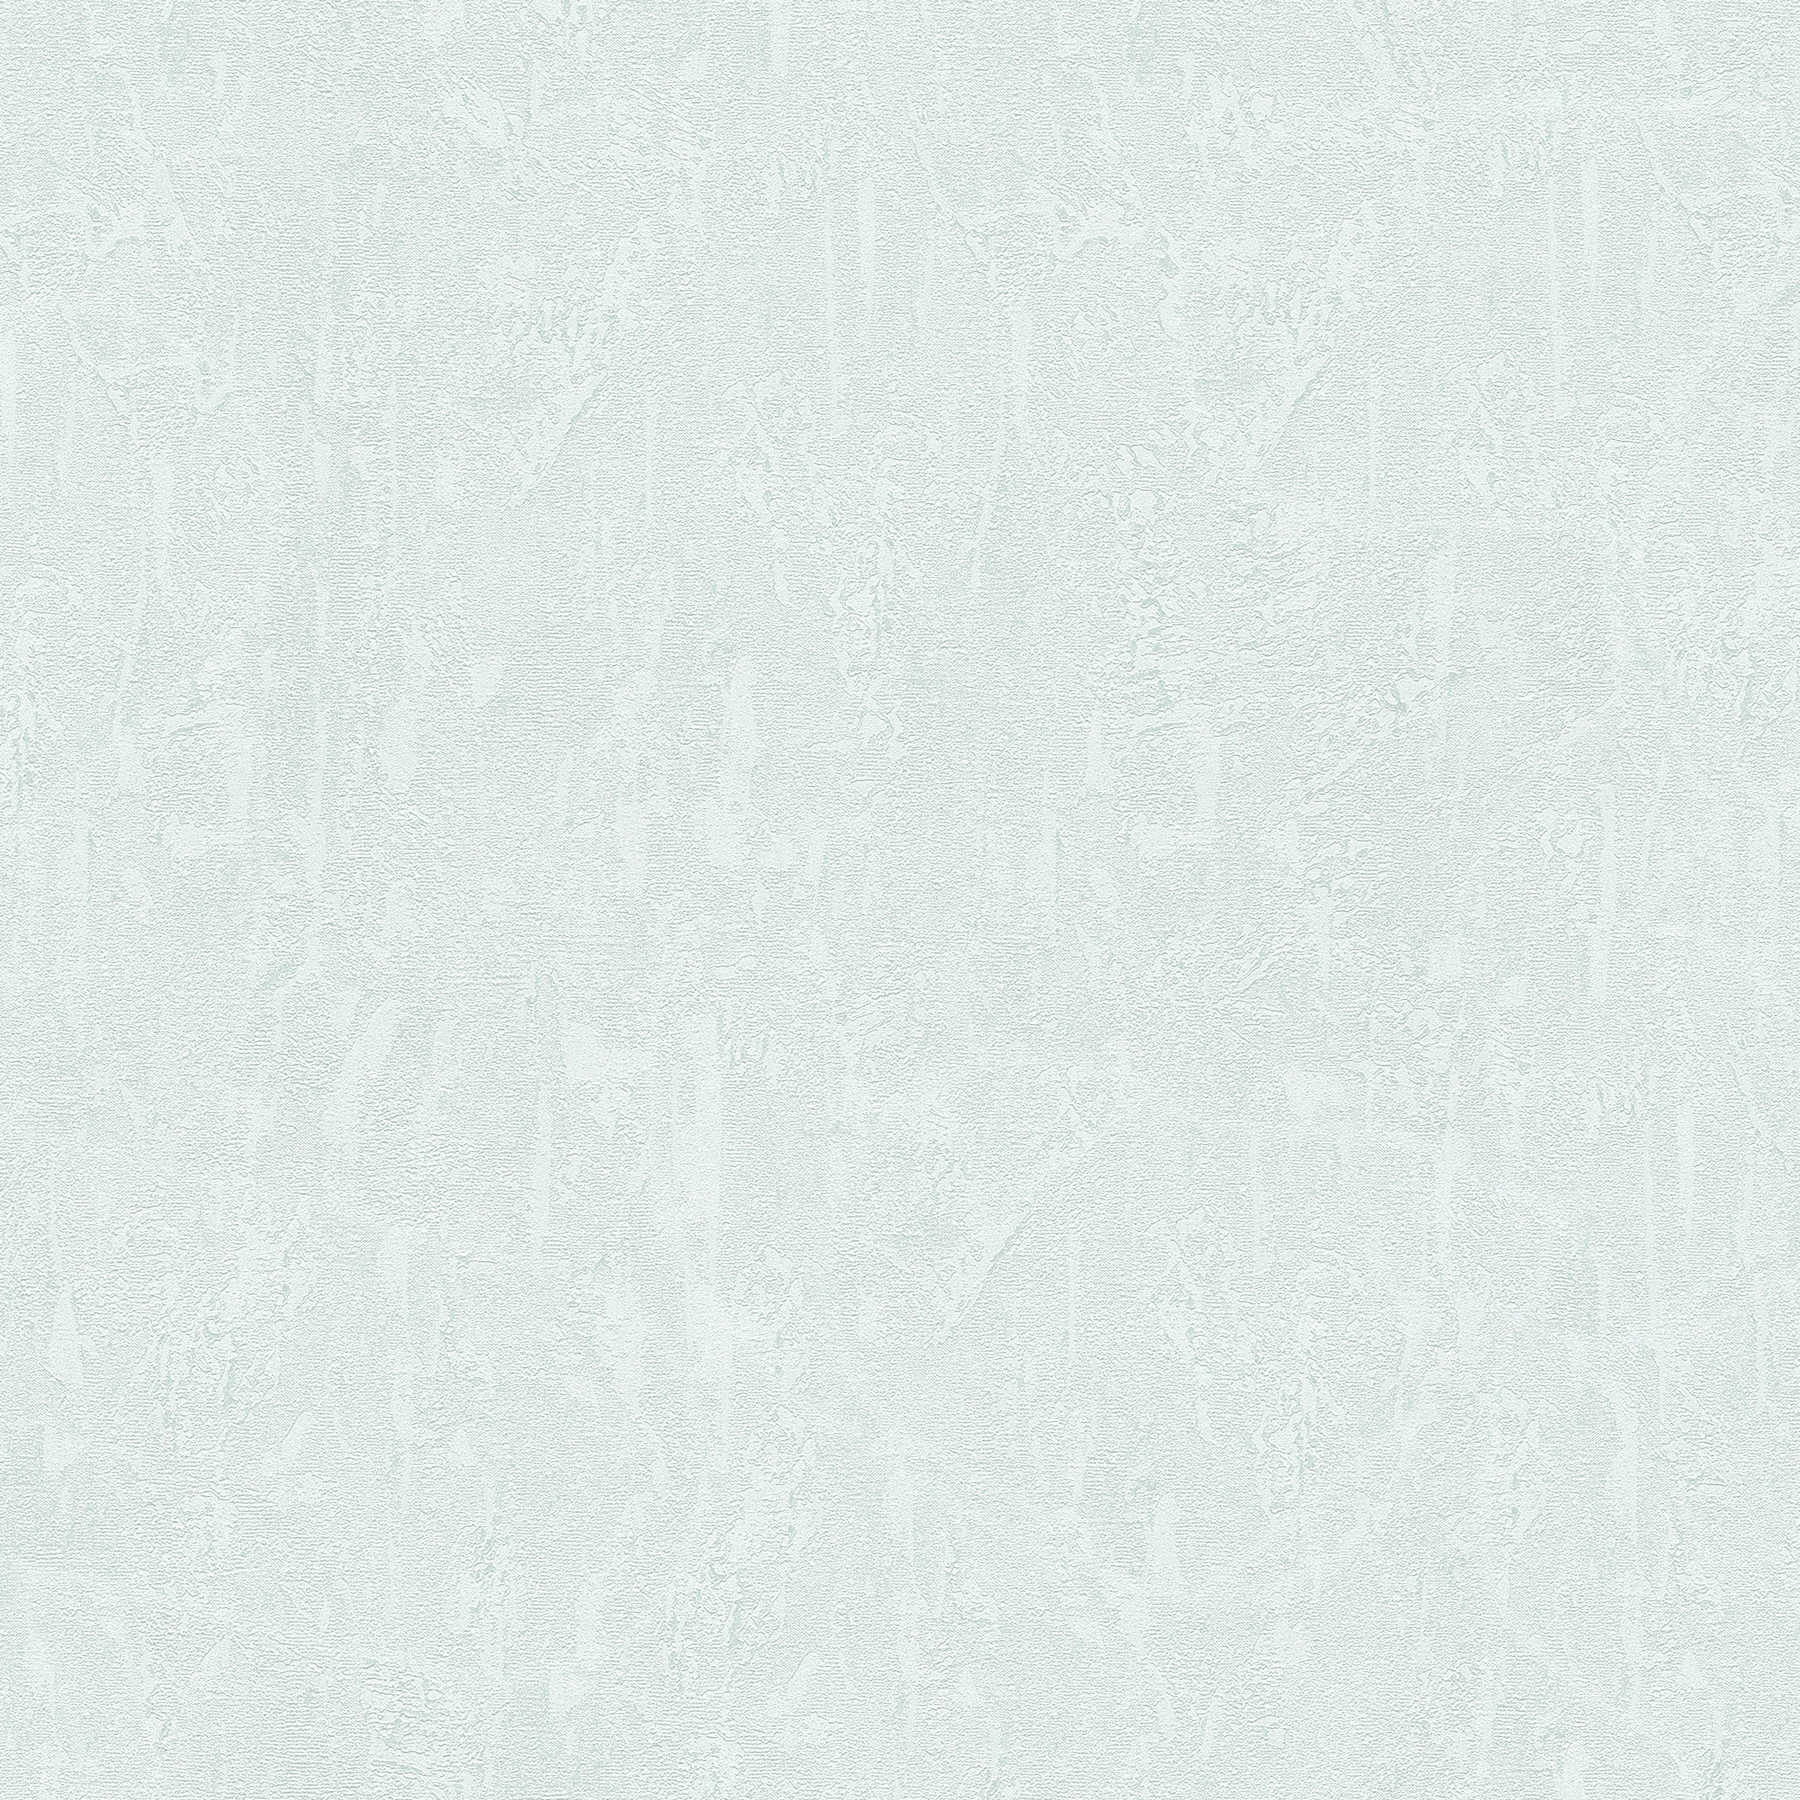         Gipsvezelbehang lichtblauw wit met textuureffect
    